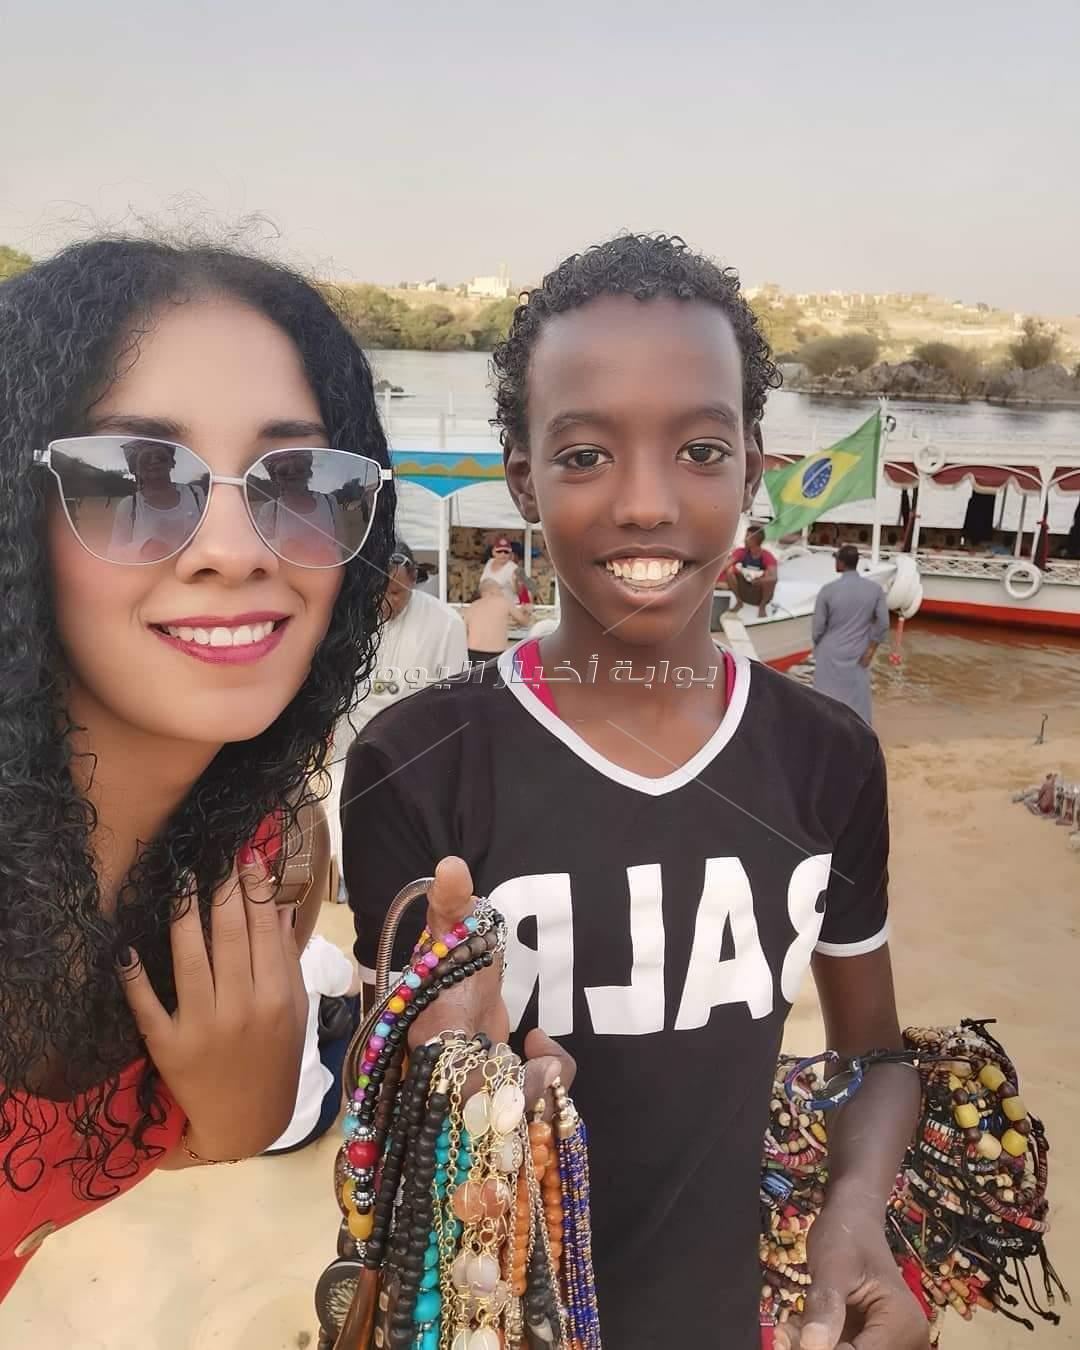 سياح يلتقطون صور مع الاطفال المصريين في المناطق الاثرية